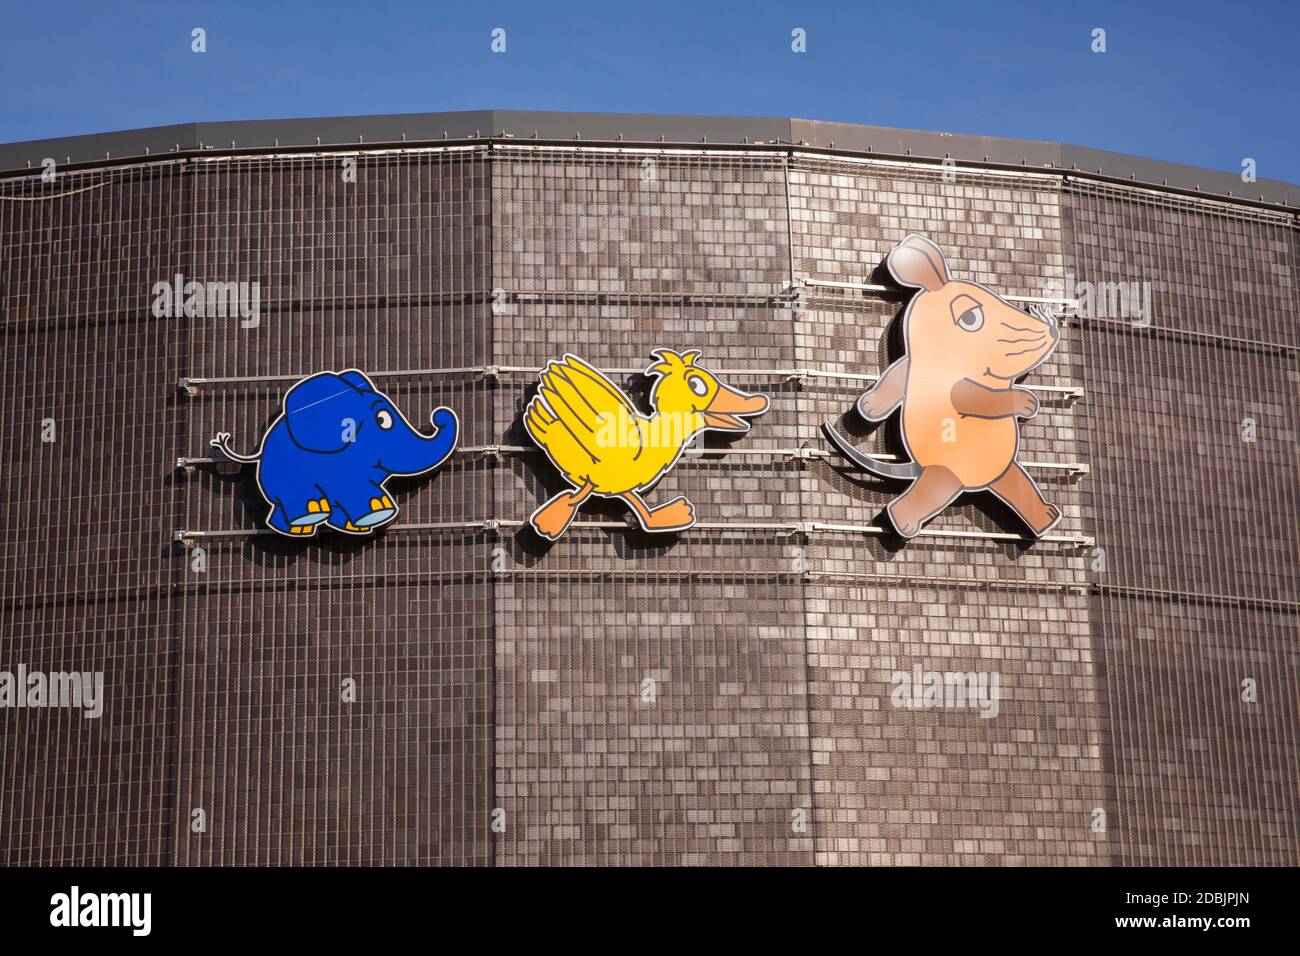 Das Odysseum Adventure Museum im Stadtteil Kalk, Figuren der Sendung mit der Maus, Köln, Deutschland. das Odysseum Abenteuermuseum im St Stockfoto